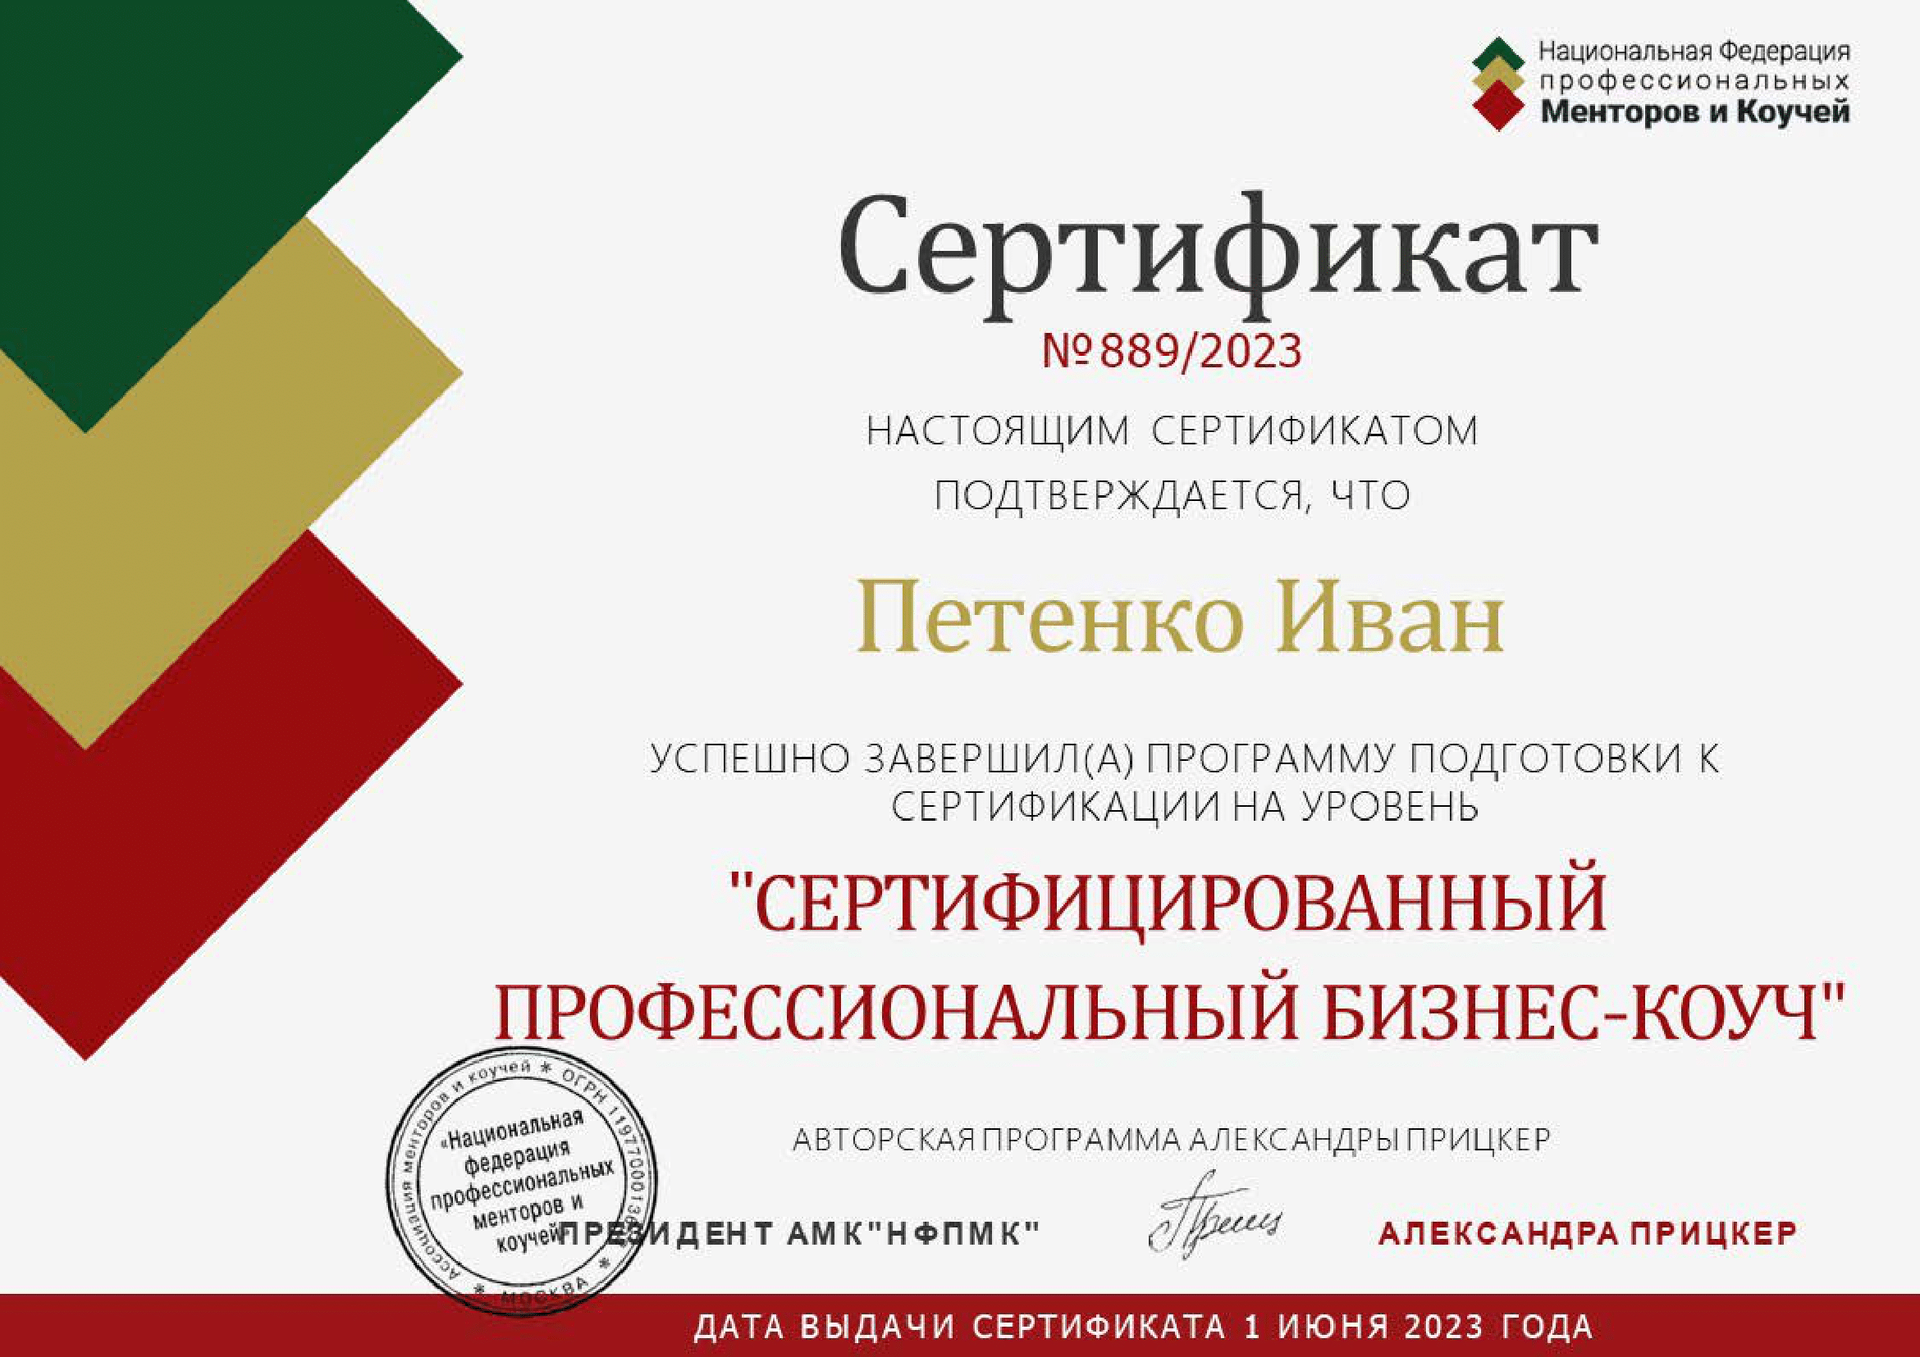 Национальная Федерация профессиональных Менторов и Коучей. Сертифицированный бизнес-коуч.